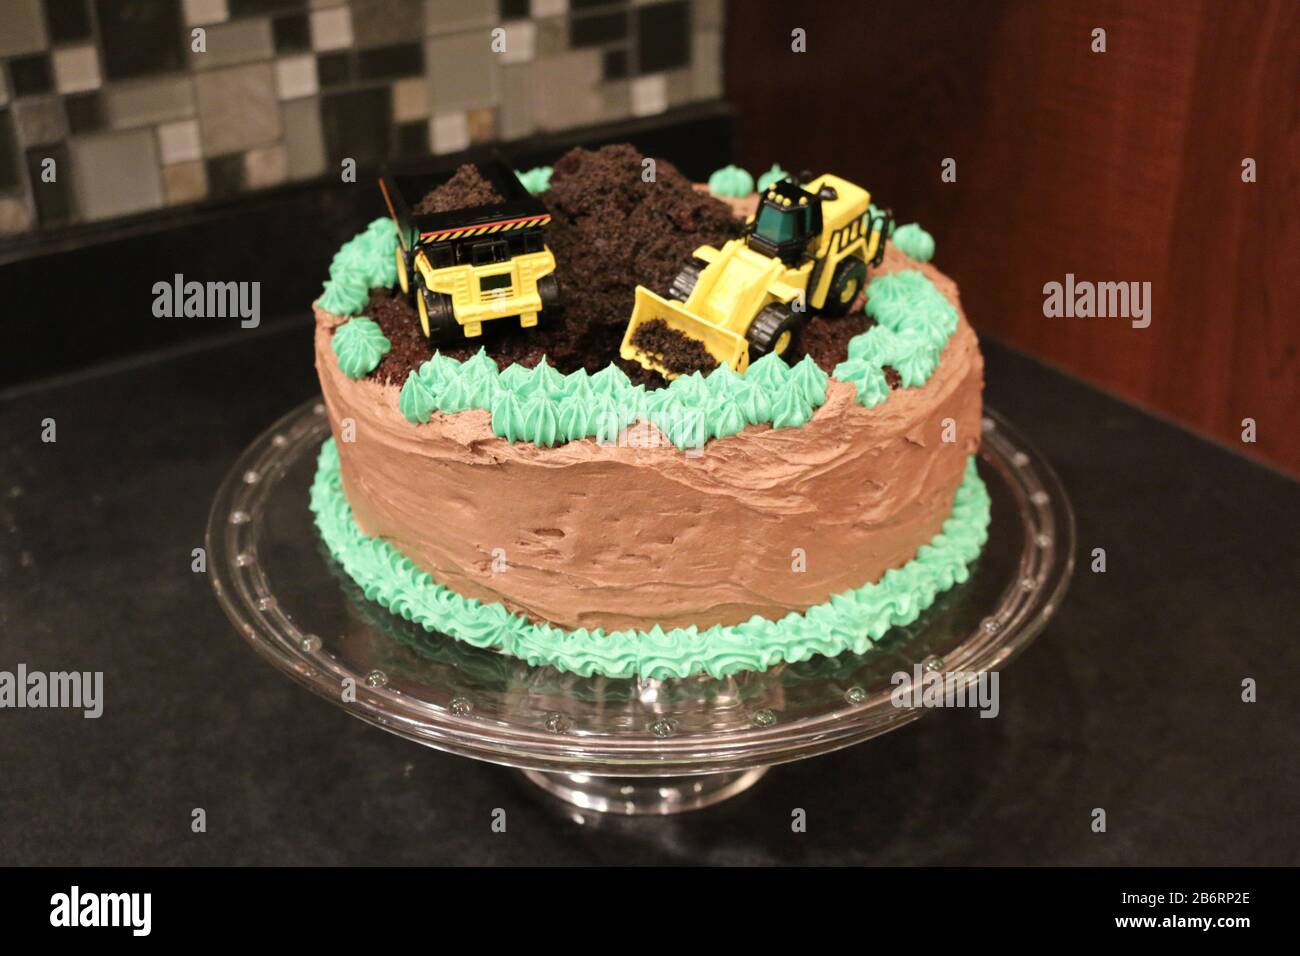 Chocolate Truck Banque D Image Et Photos Alamy